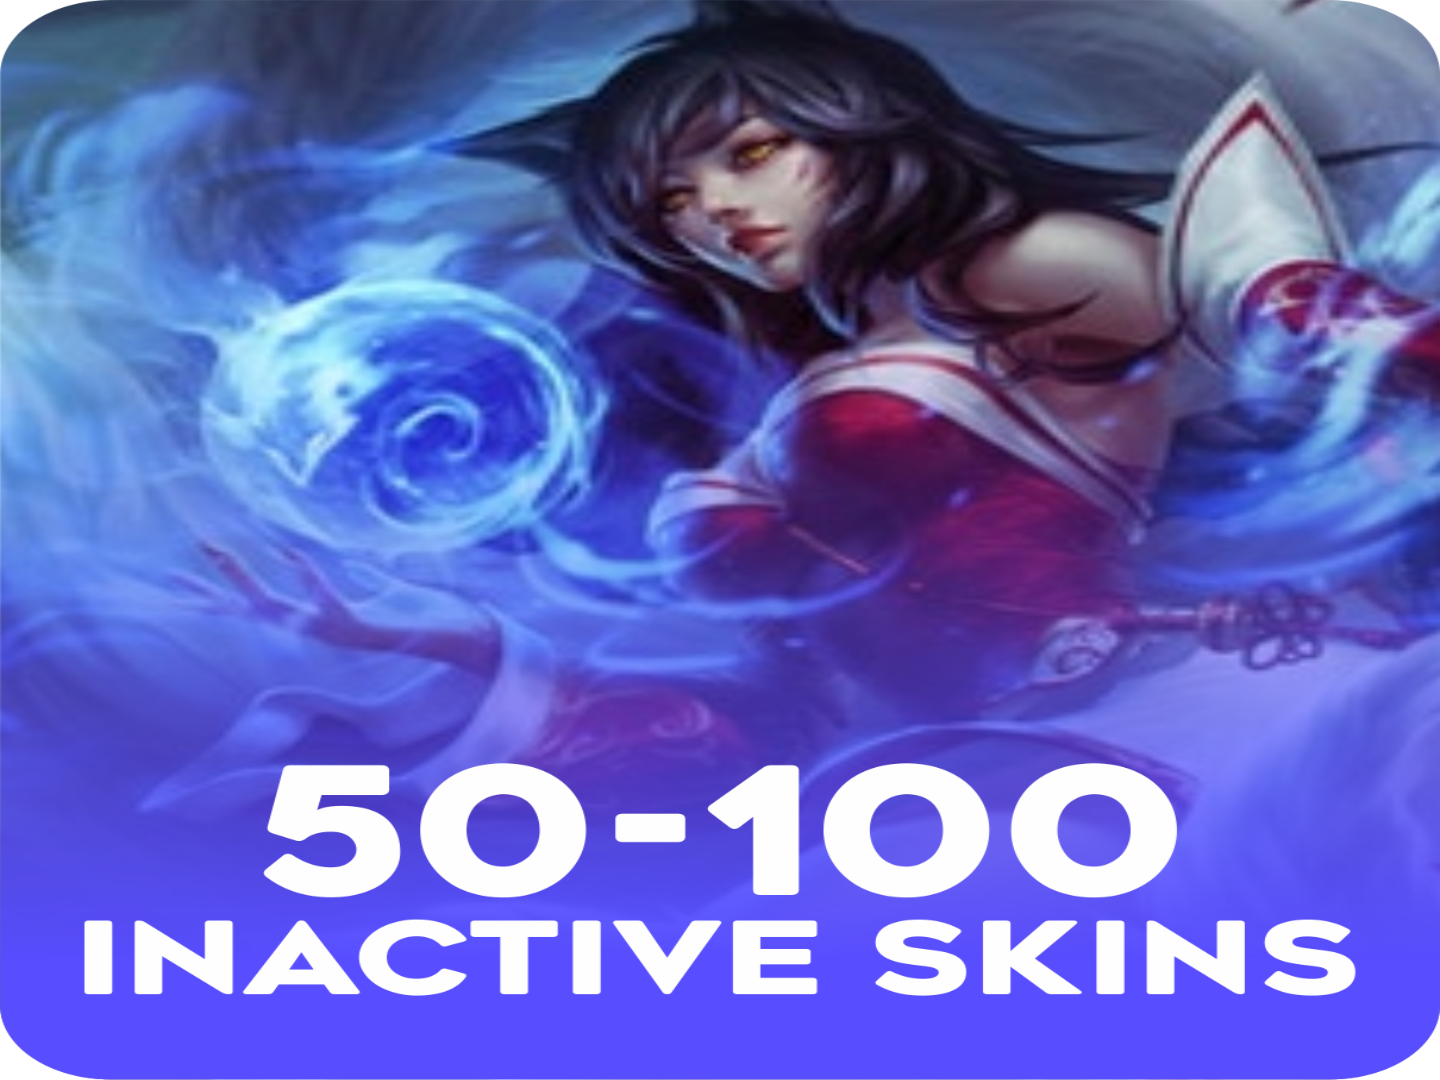 Inactive 50-100 skins Account